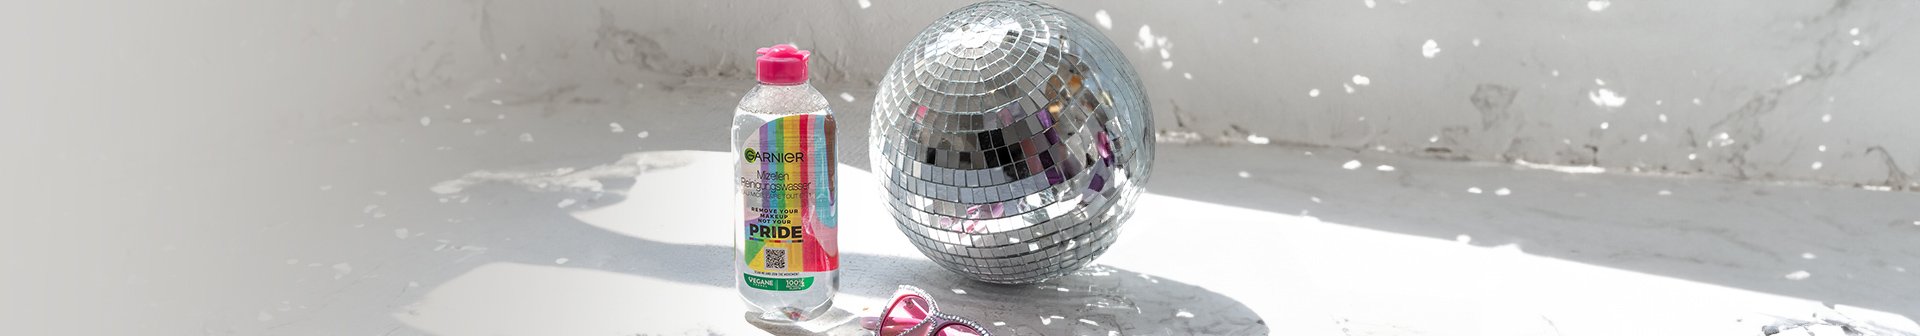 Mizellenwasser Pride Edition steht neben einer Discokugel und einer rosa Sonnenbrille